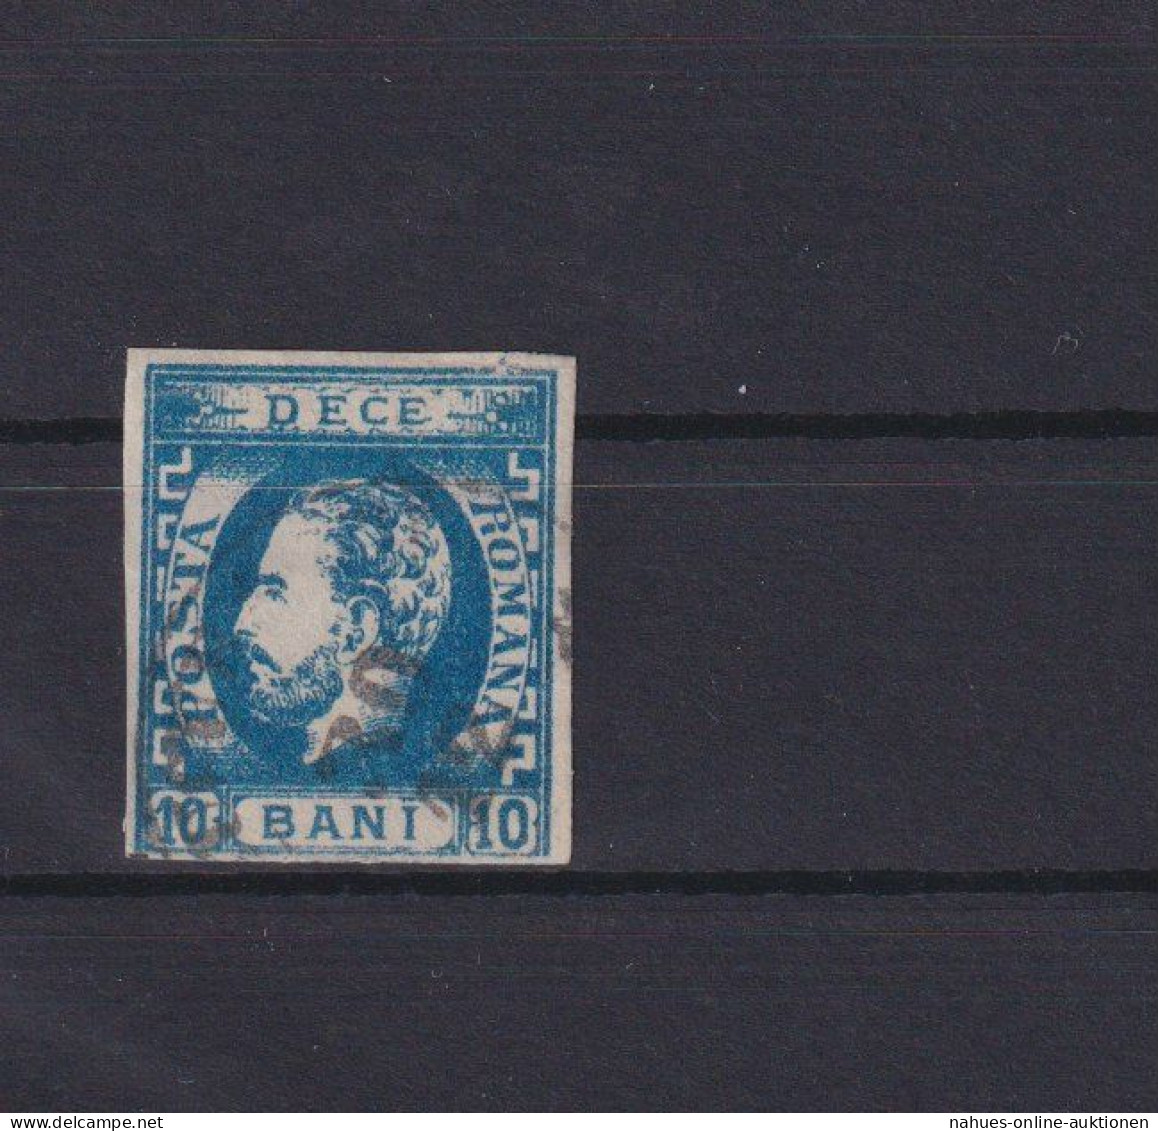 Rumänien Fürst Karl I. 29 I. 10 Bani Blau Ungebraucht Kat. 80,00 Ausgabe 1871 - Covers & Documents